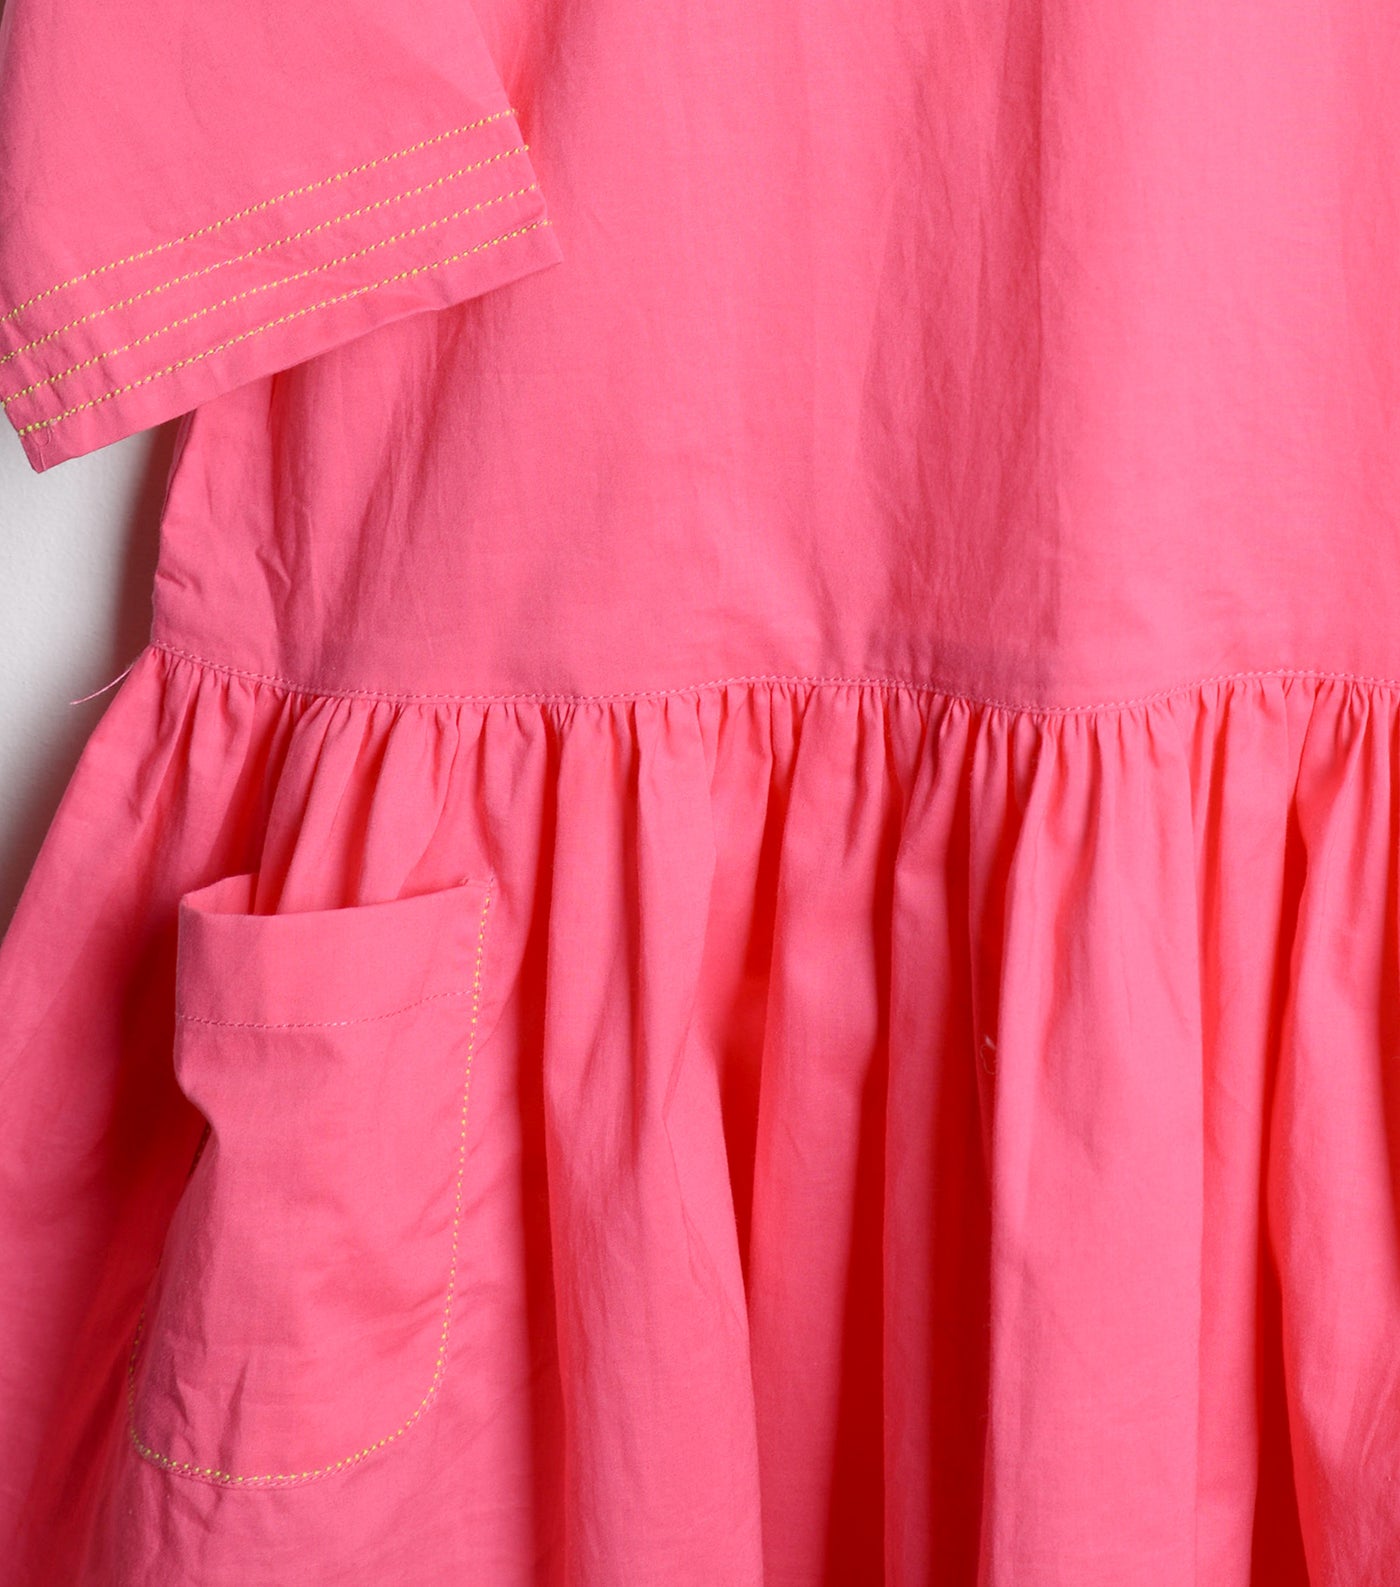 Hot Pink Cotton Dress